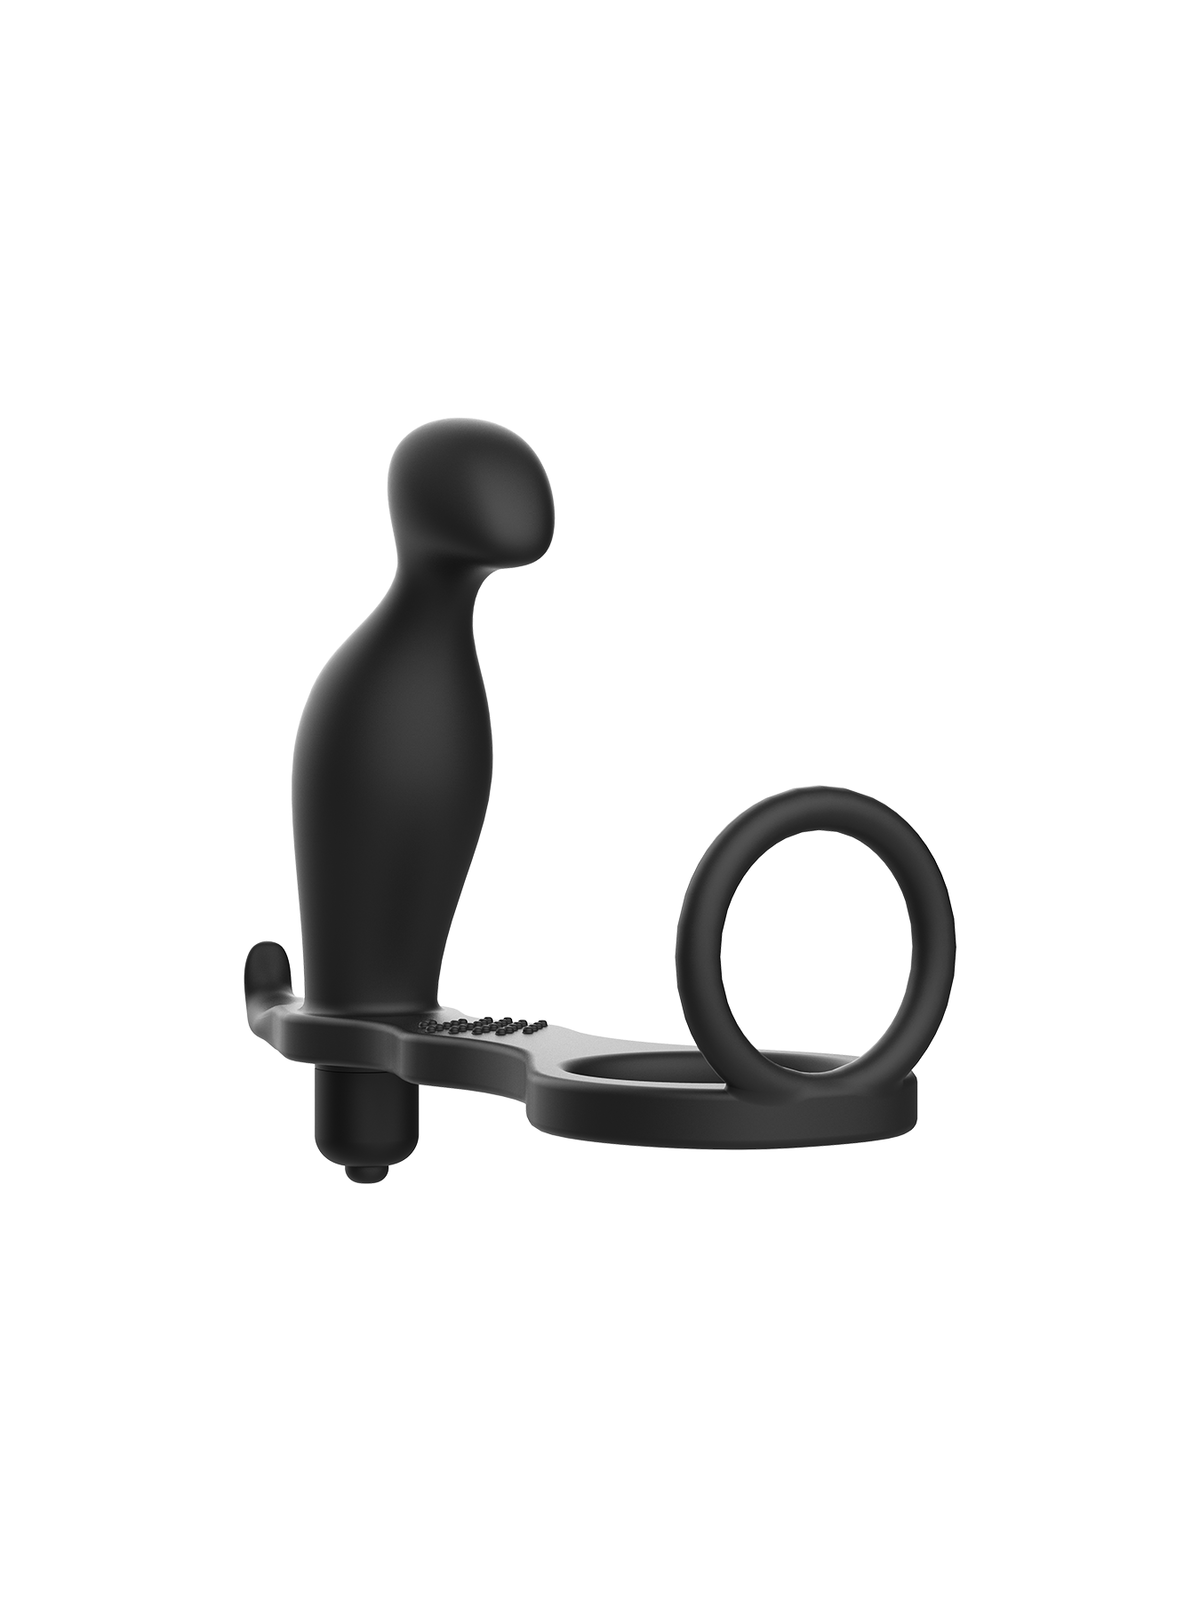 Addicted Toys Plug Anal Con Anillo Silicona Negro - Comprar Estimulador próstata Addicted Toys - Estimuladores prostáticos (1)